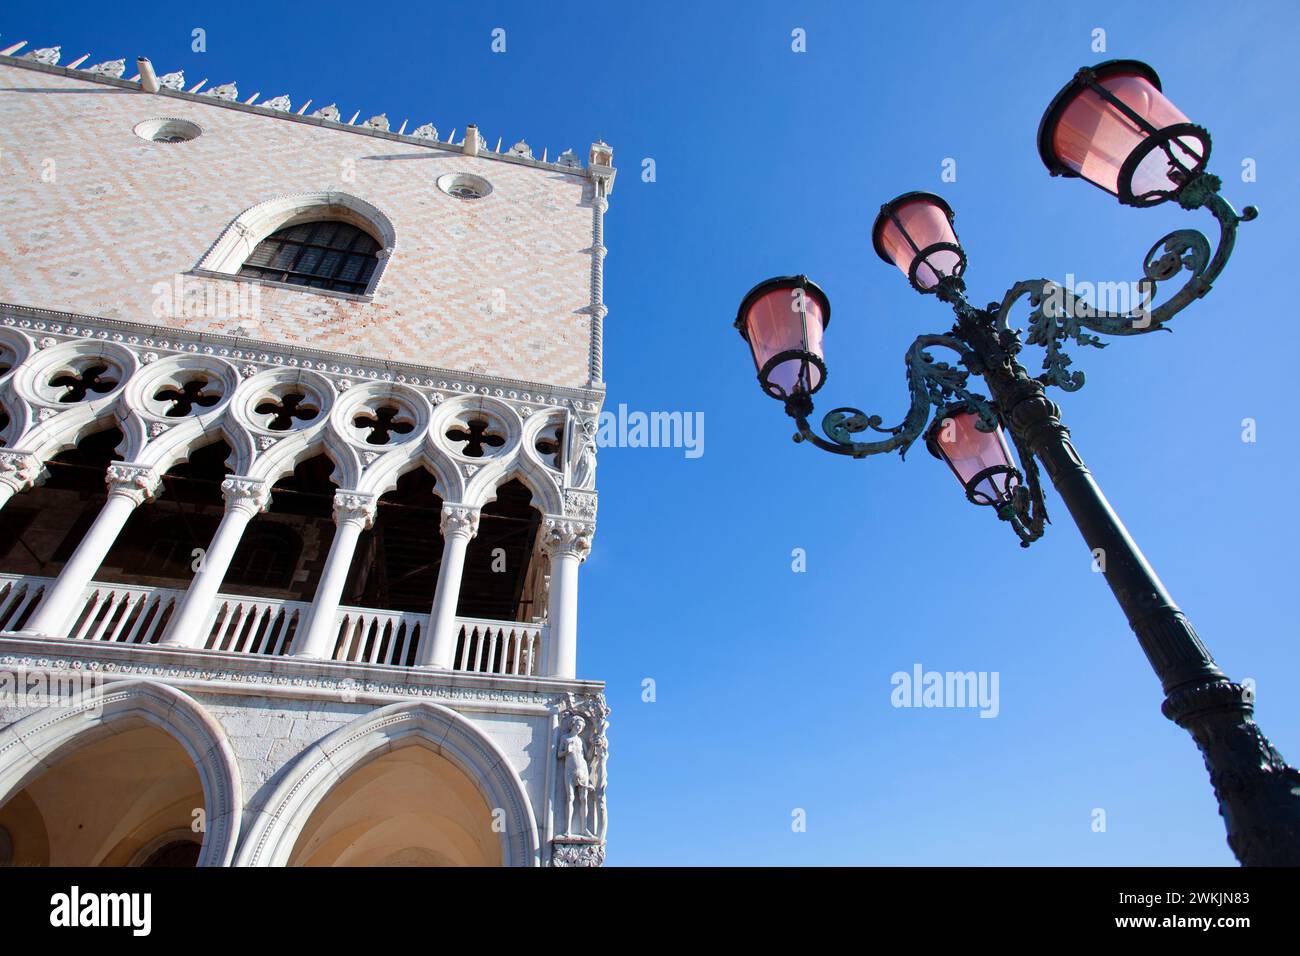 Die Außenfassade des Dogenpalastes`s (Palazzo Ducale) in venezianischer gotischer Architektur, Piazzetta San Marco, Venedig, Venetien, Italien. Stockfoto